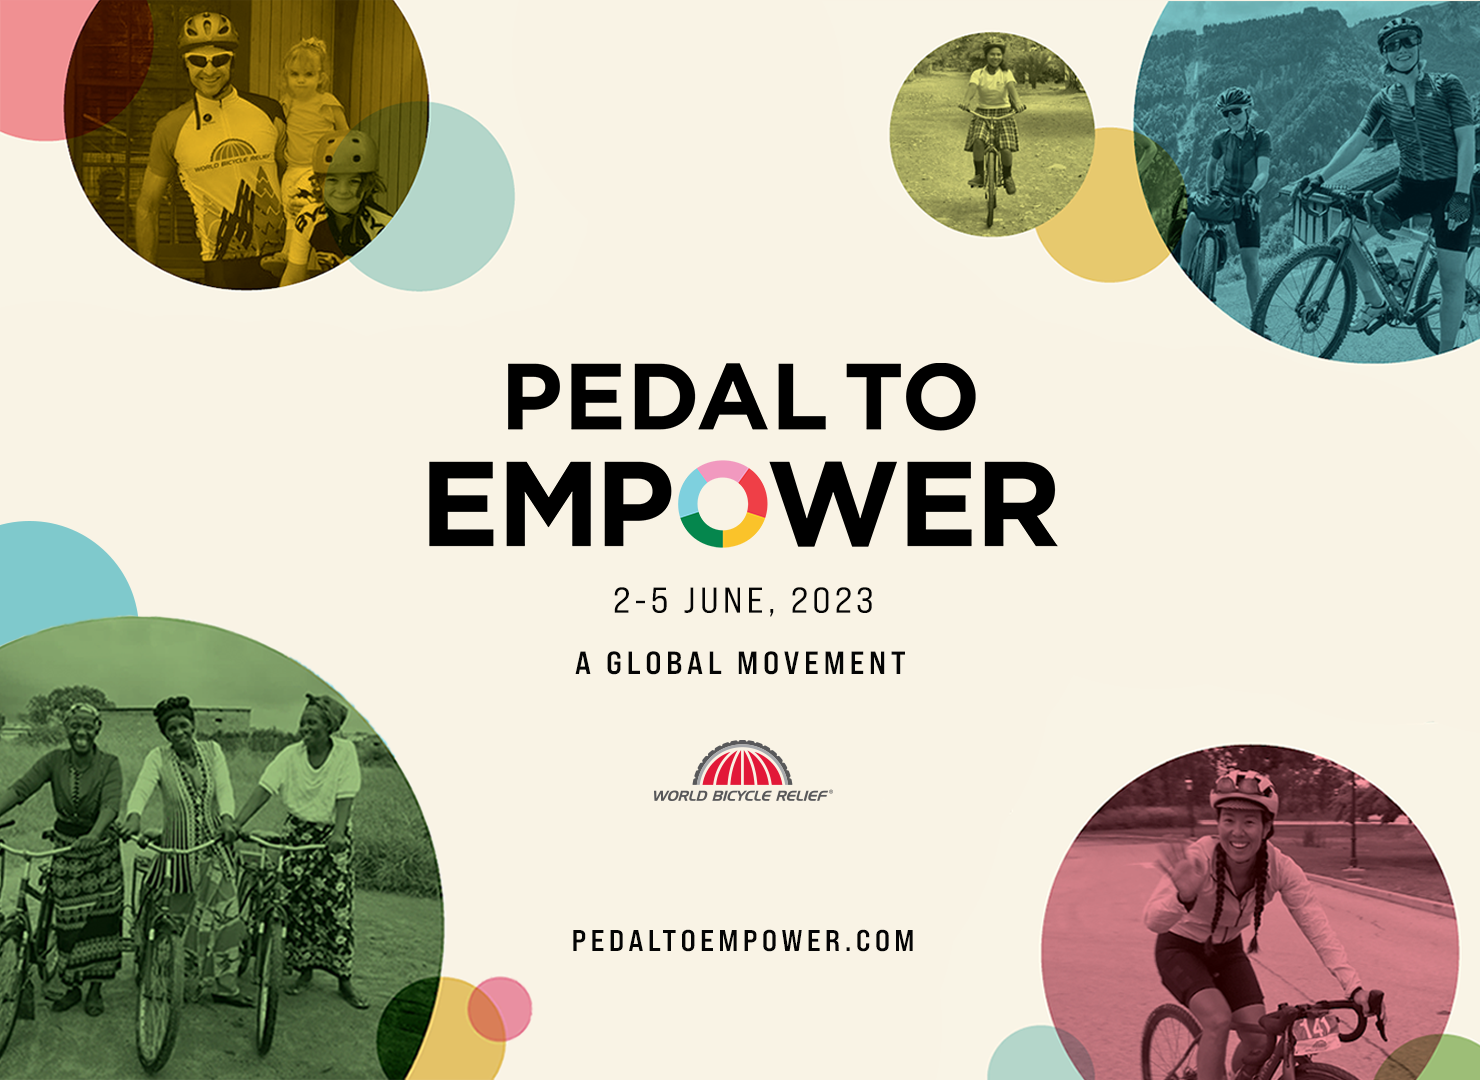 www.pedaltoempower.com